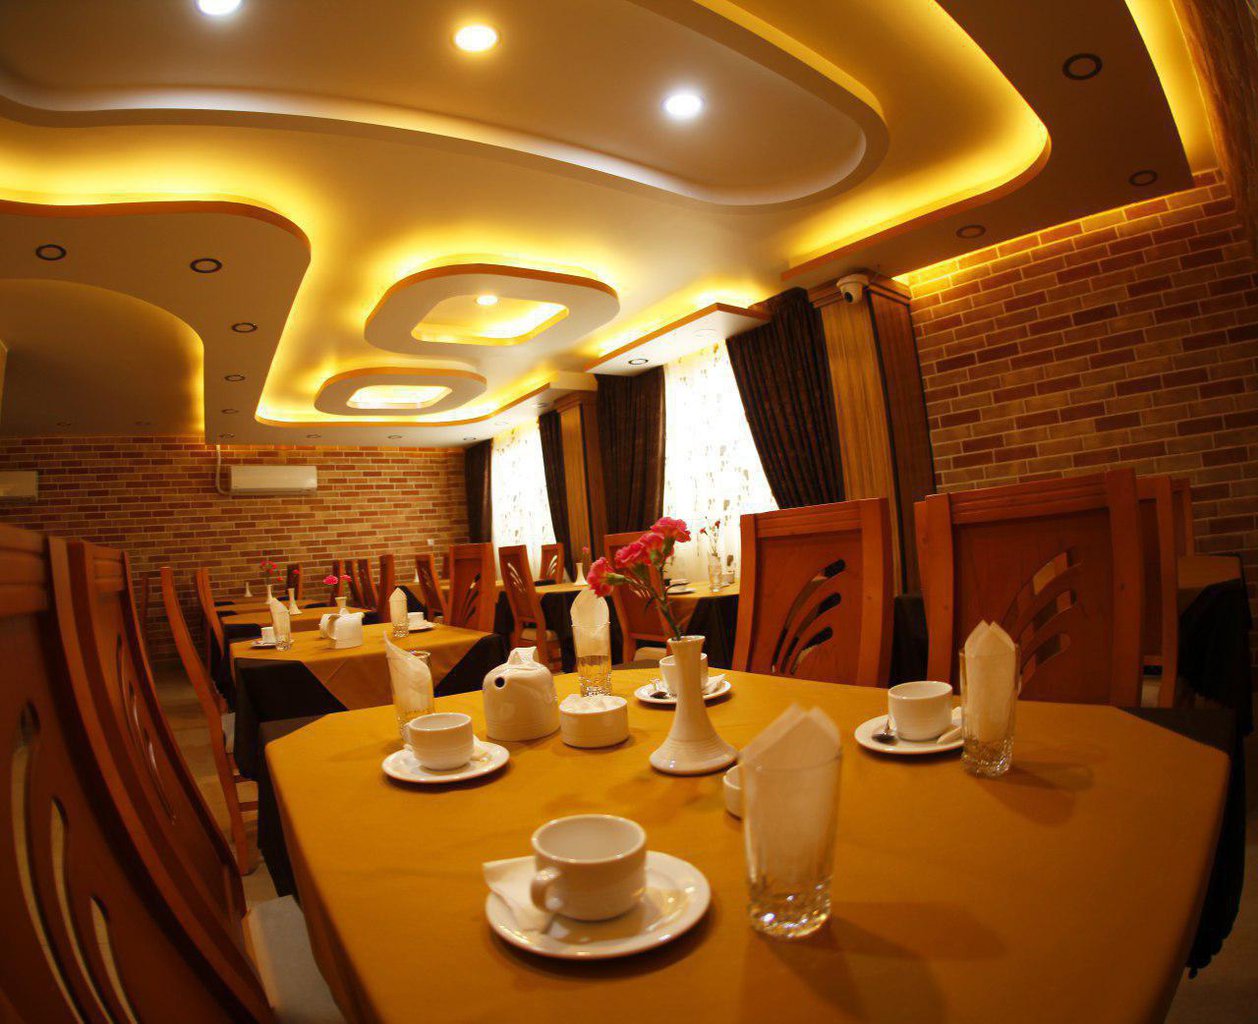 هتل نصیر الملک 2 هتل نصیر الملک شیراز